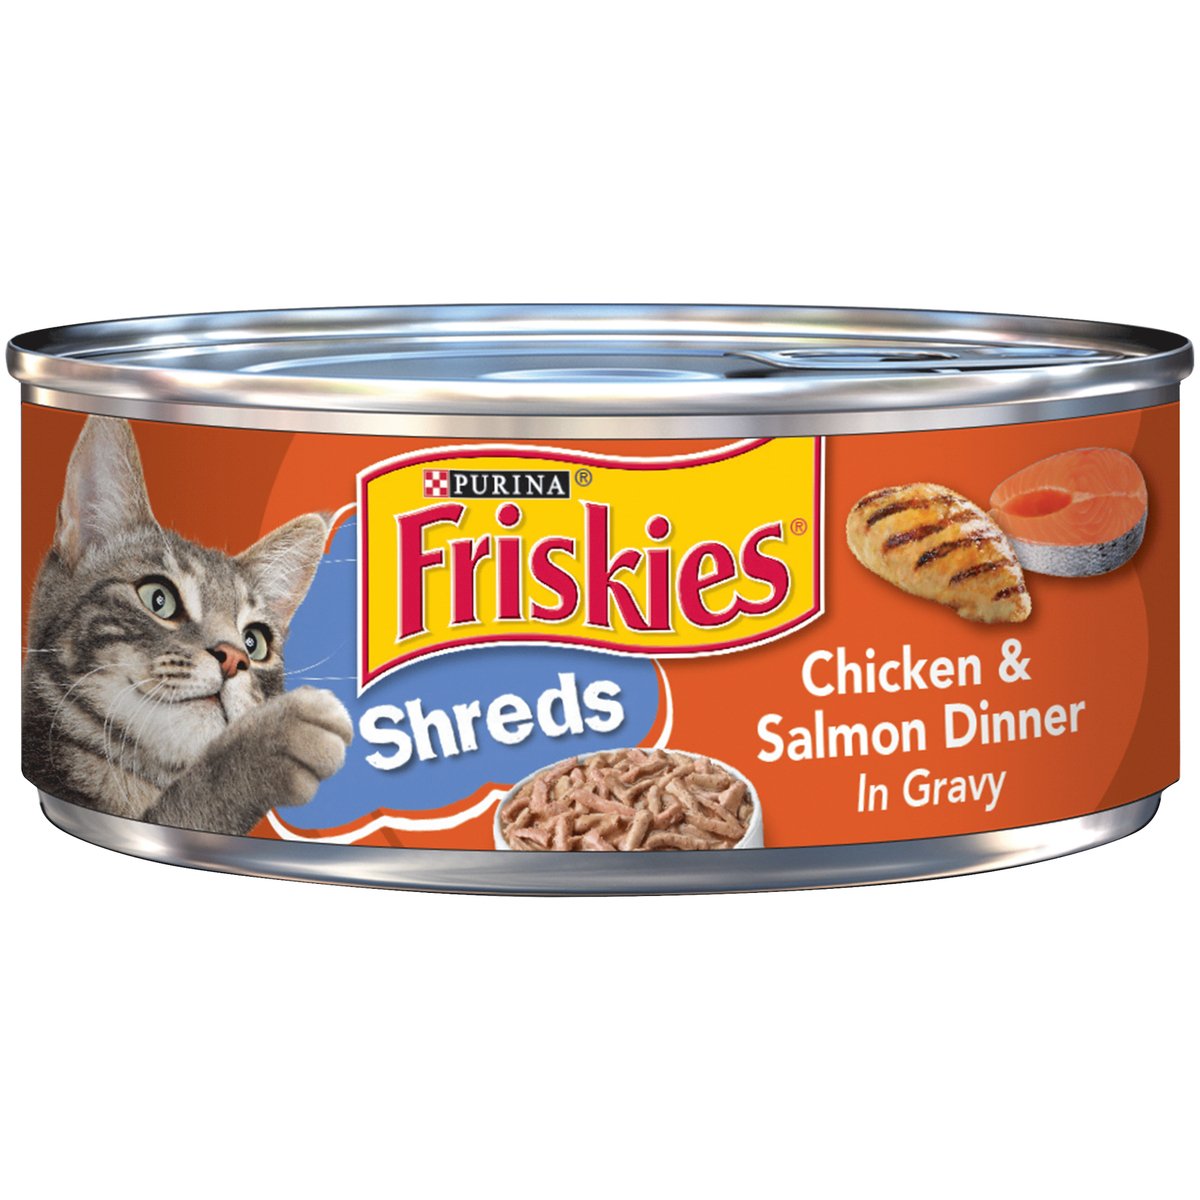 Friskies Shreds Chicken & Salmon Dinner In Gravy 156 g